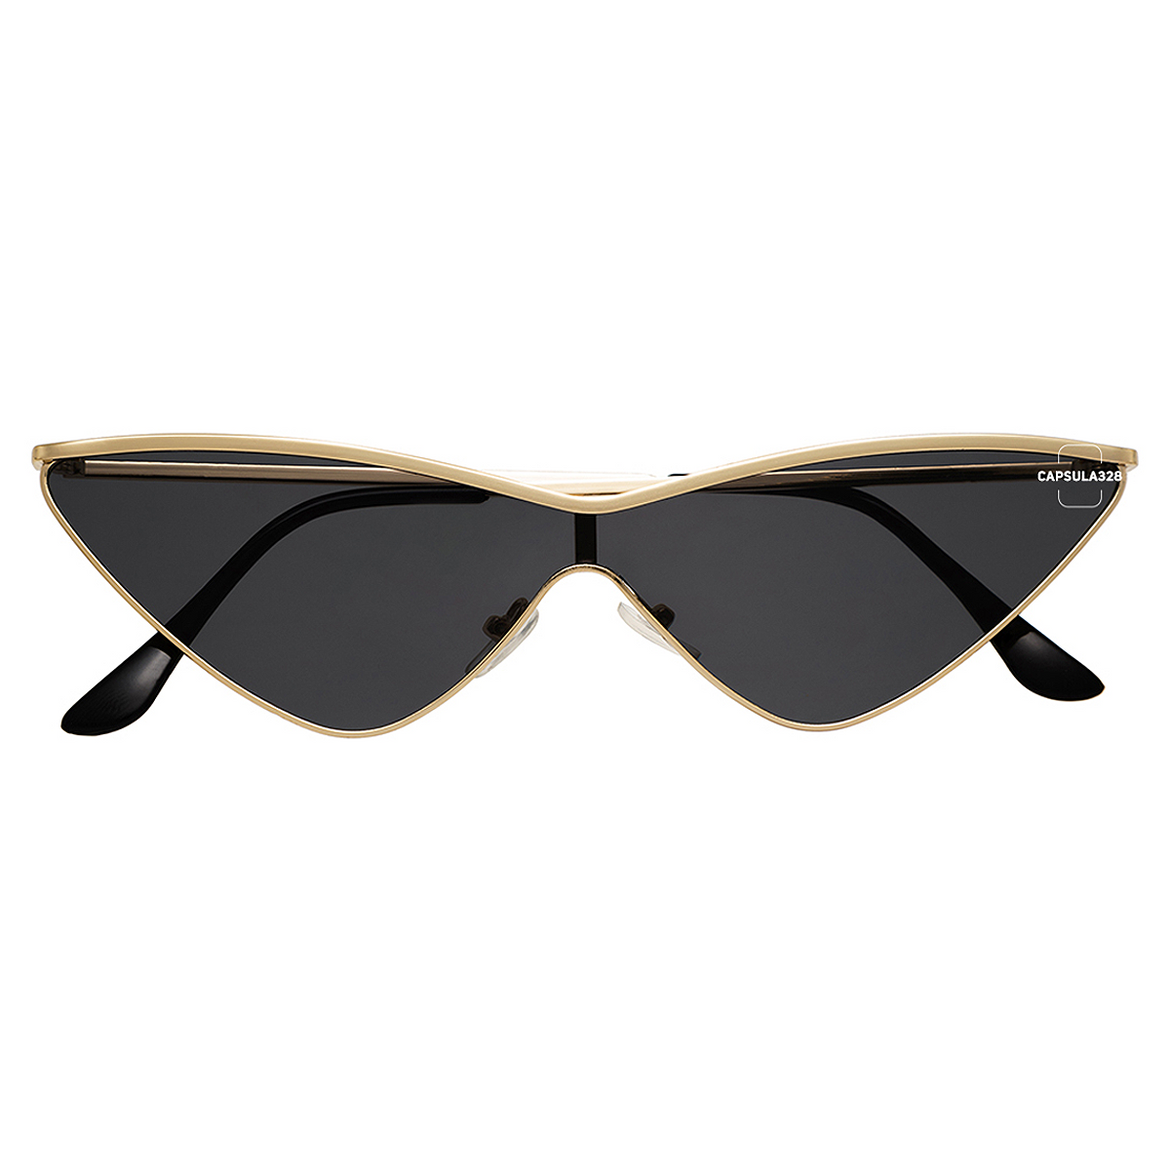 Солнцезащитные очки Dragonfly 1608